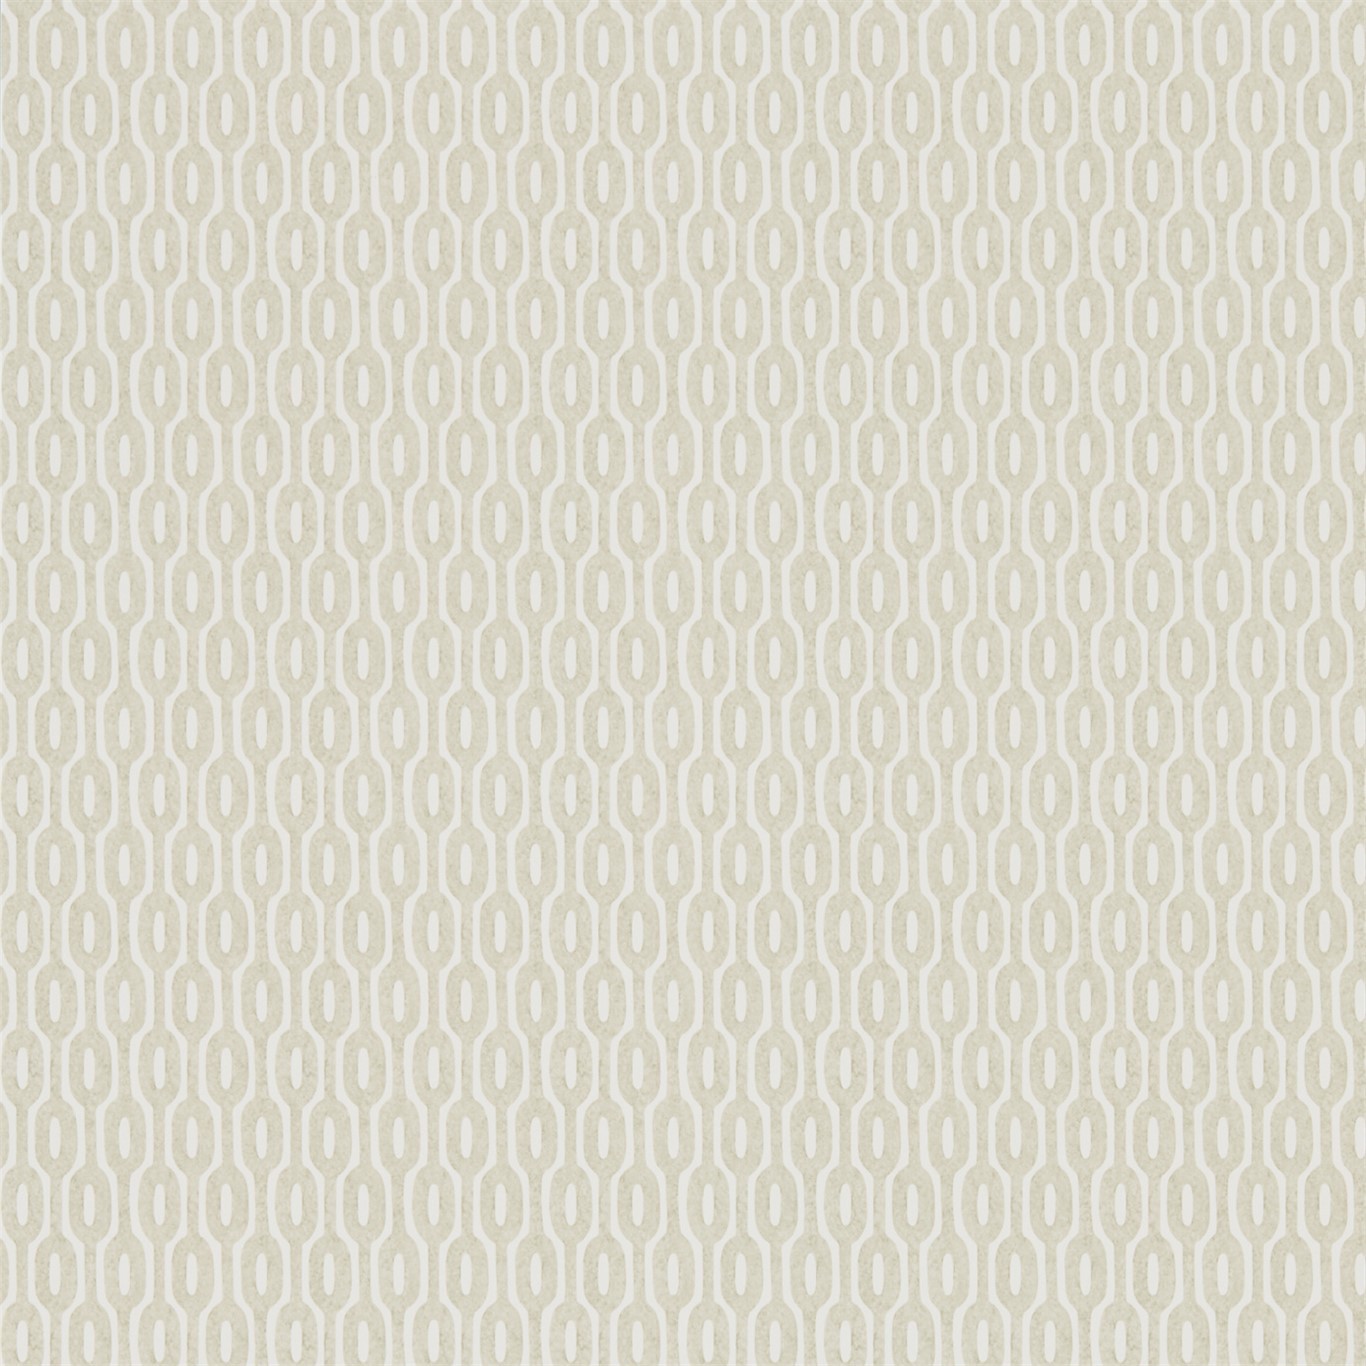 Hemp Linen Wallpaper by SAN